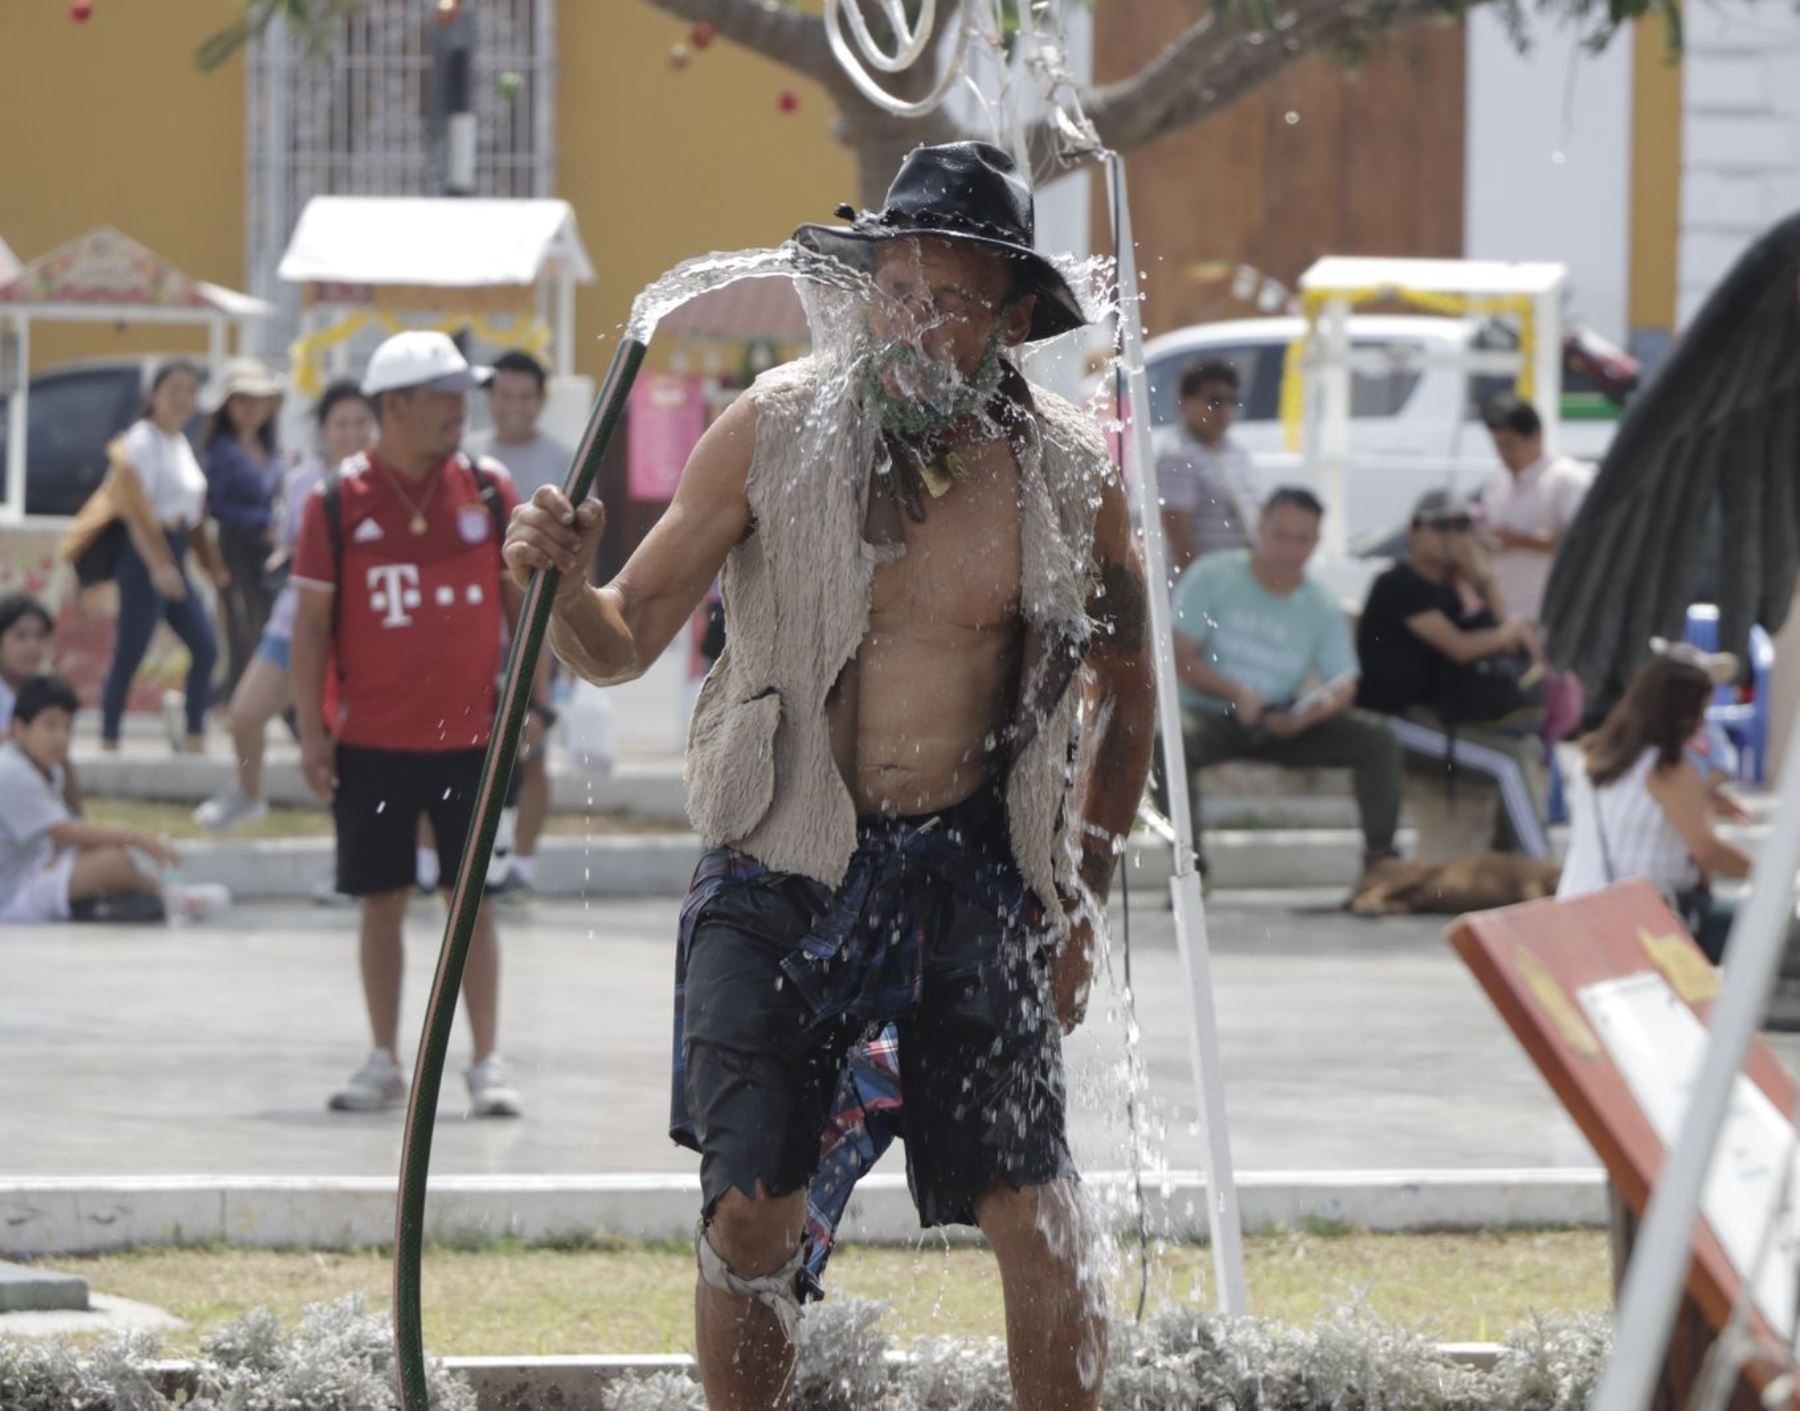 La ola de calor continuará en la ciudad de Trujillo. Senamhi prevé que se presentará temperaturas de hasta 31.5°C, más de 2 grados de lo habitual en esta época del año. Foto: Luis Puell